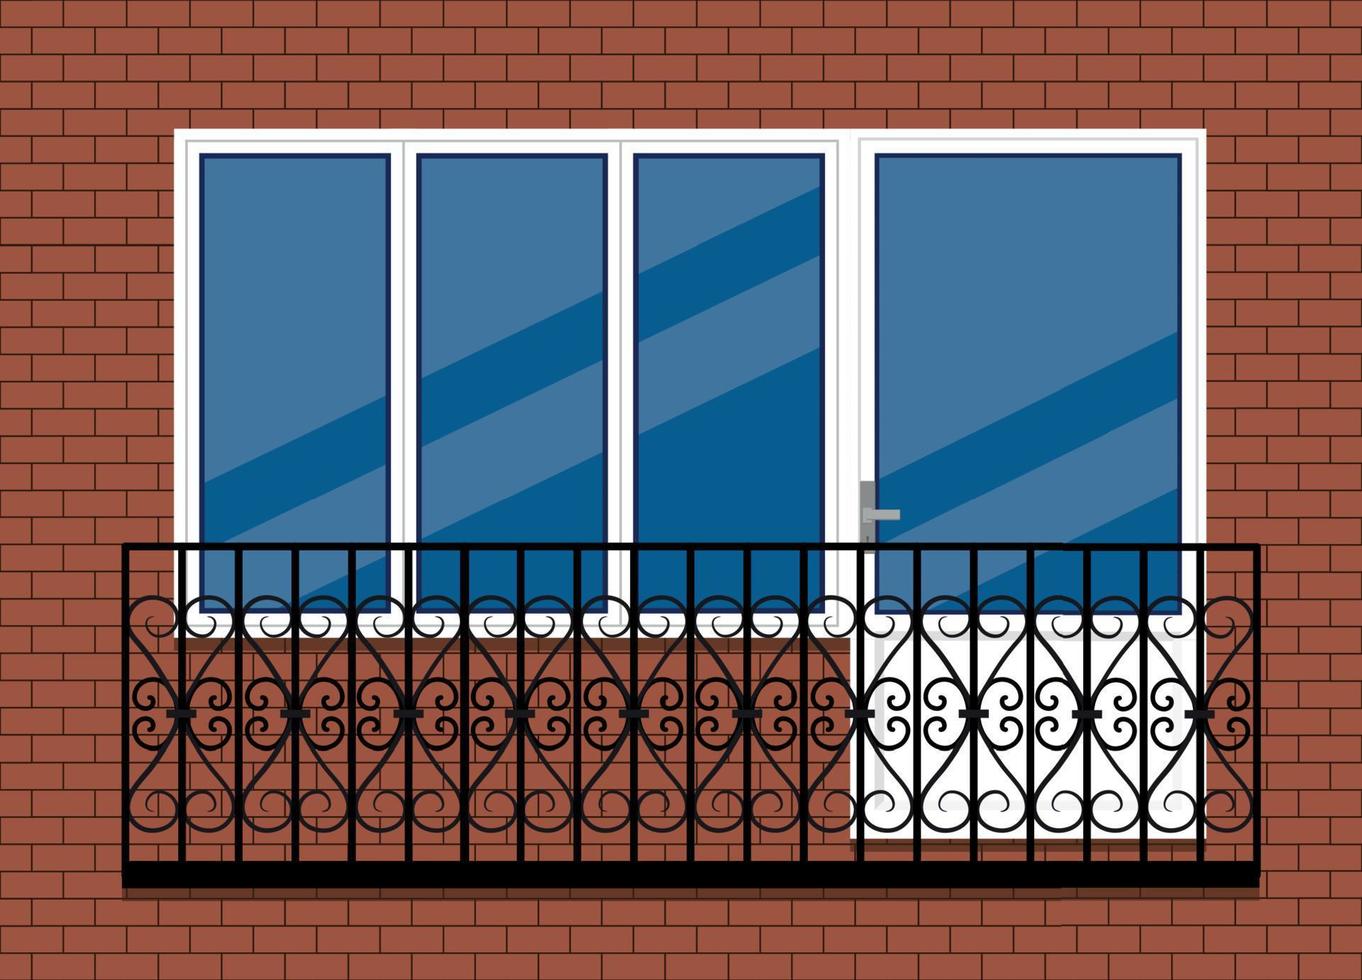 janela de pvc de plástico branco com porta e varanda com trilho de varanda de metal preto, vista frontal. isolado em um fundo de parede de tijolo marrom vermelho. design plano de estilo cartoon. vetor